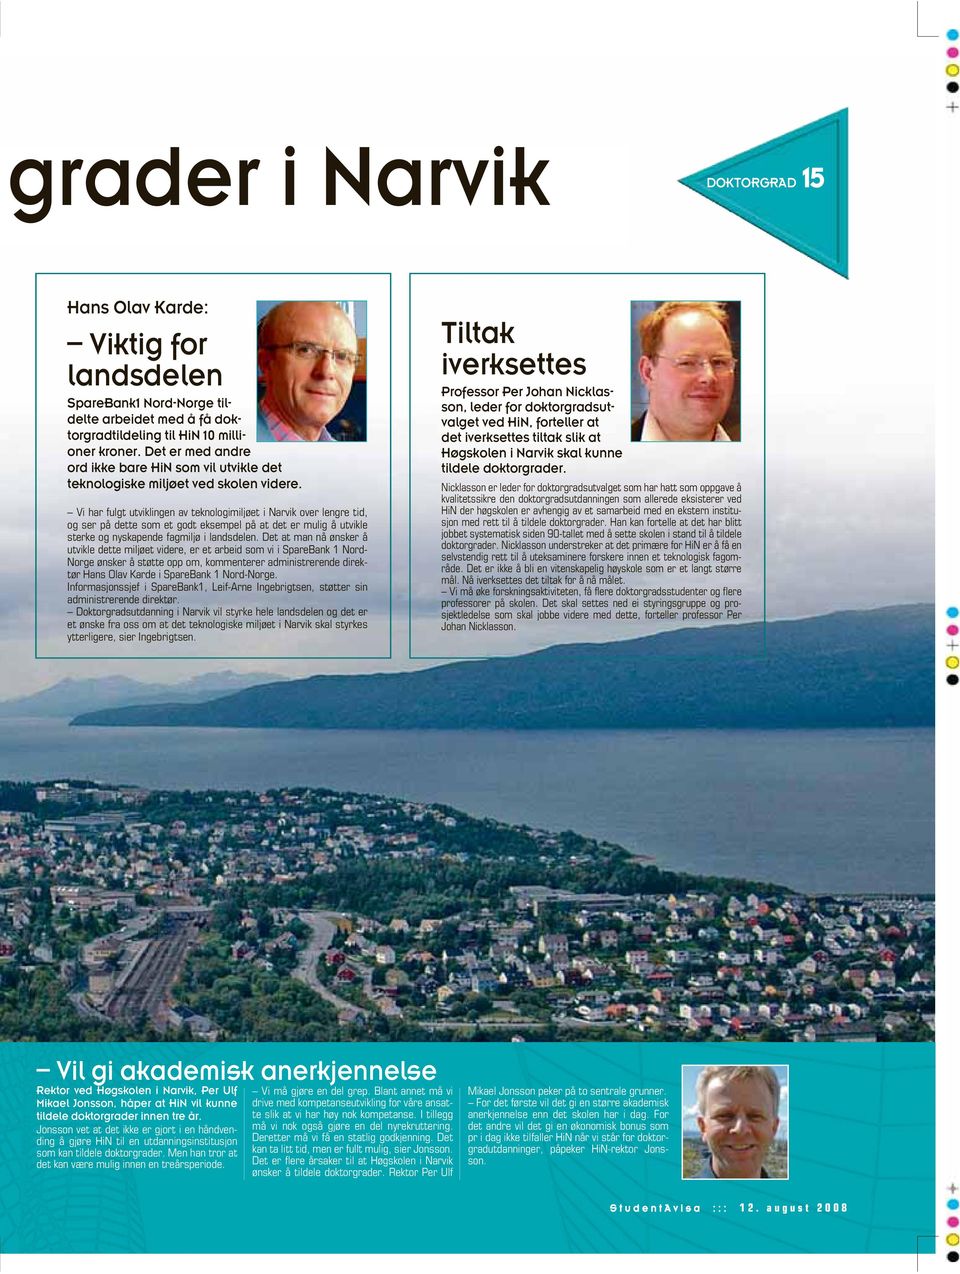 Vi har fulgt utviklingen av teknologimiljøet i Narvik over lengre tid, og ser på dette som et godt eksempel på at det er mulig å utvikle sterke og nyskapende fagmiljø i landsdelen.